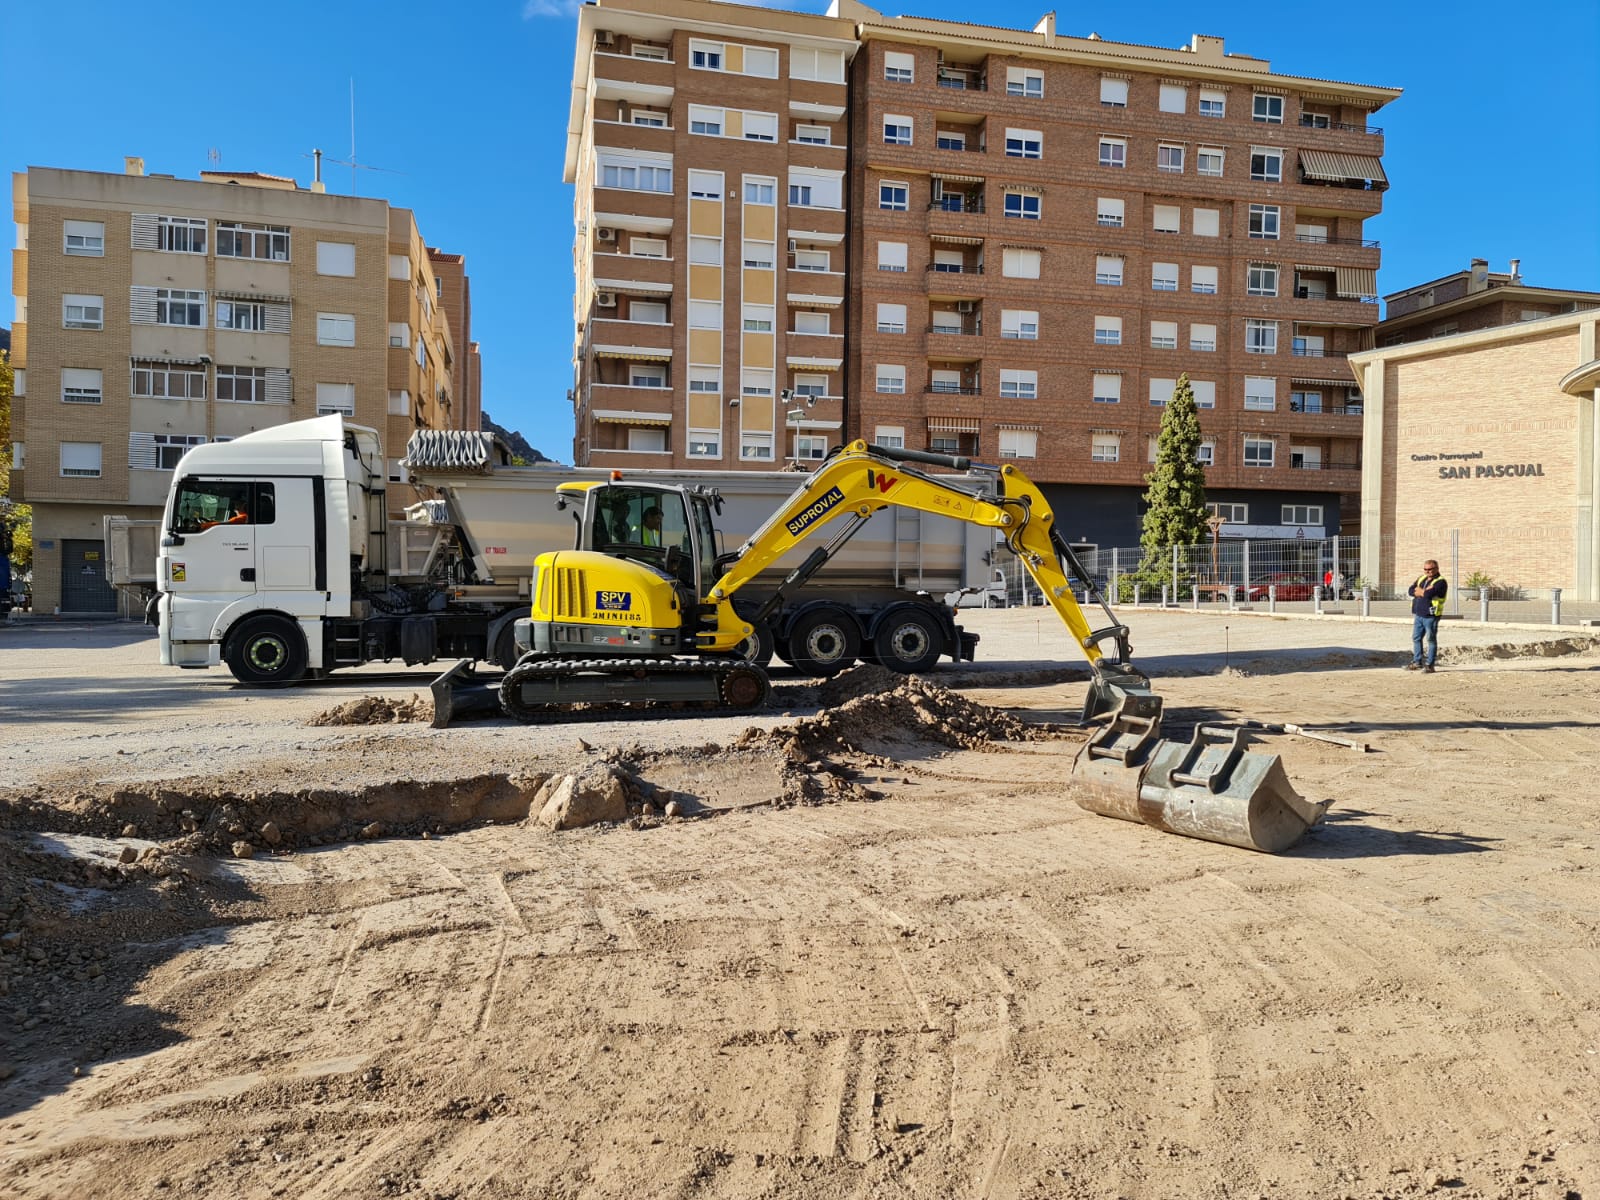 El Ayuntamiento de Elda inicia la construcción de un aparcamiento público con paseo peatonal y zonas verdes frente a la iglesia de San Pascual